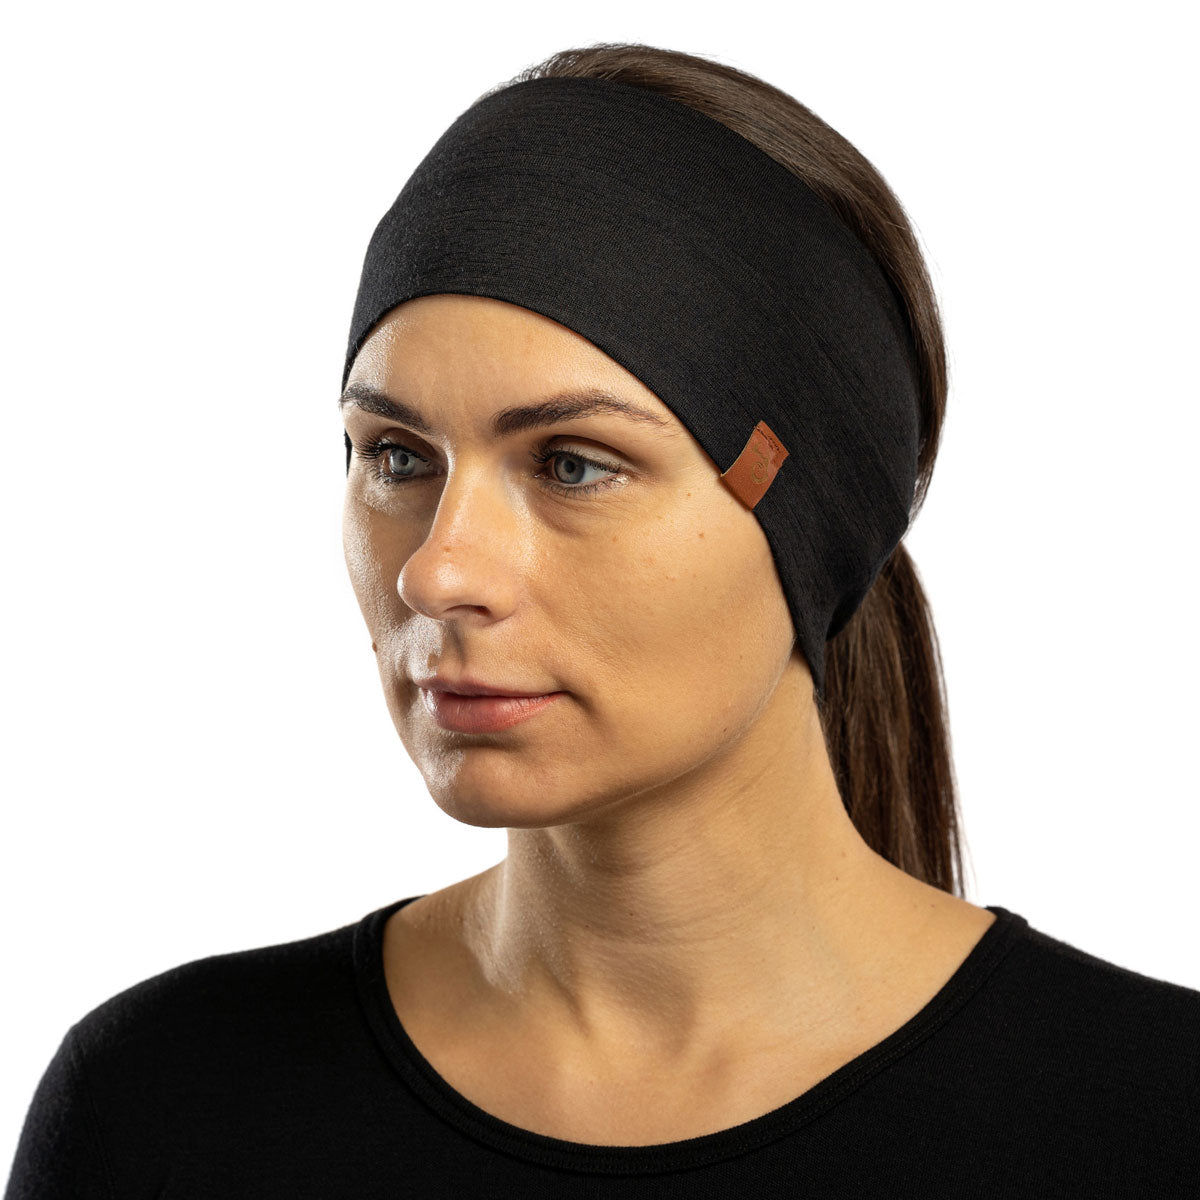 Merino Wool Headbands for Women Men Soft Hair Band Workout